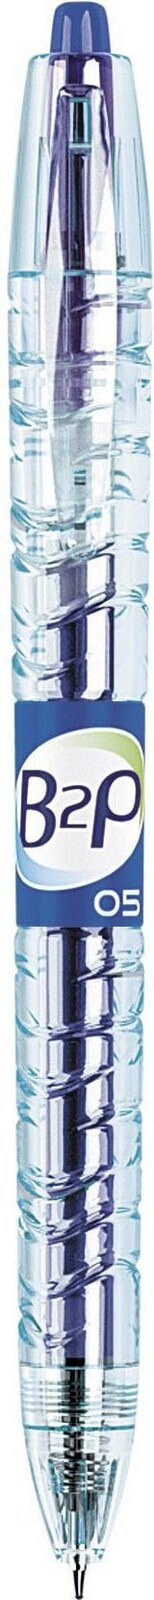 Pilot Długopis żelowy B2P niebieski (WP1730)